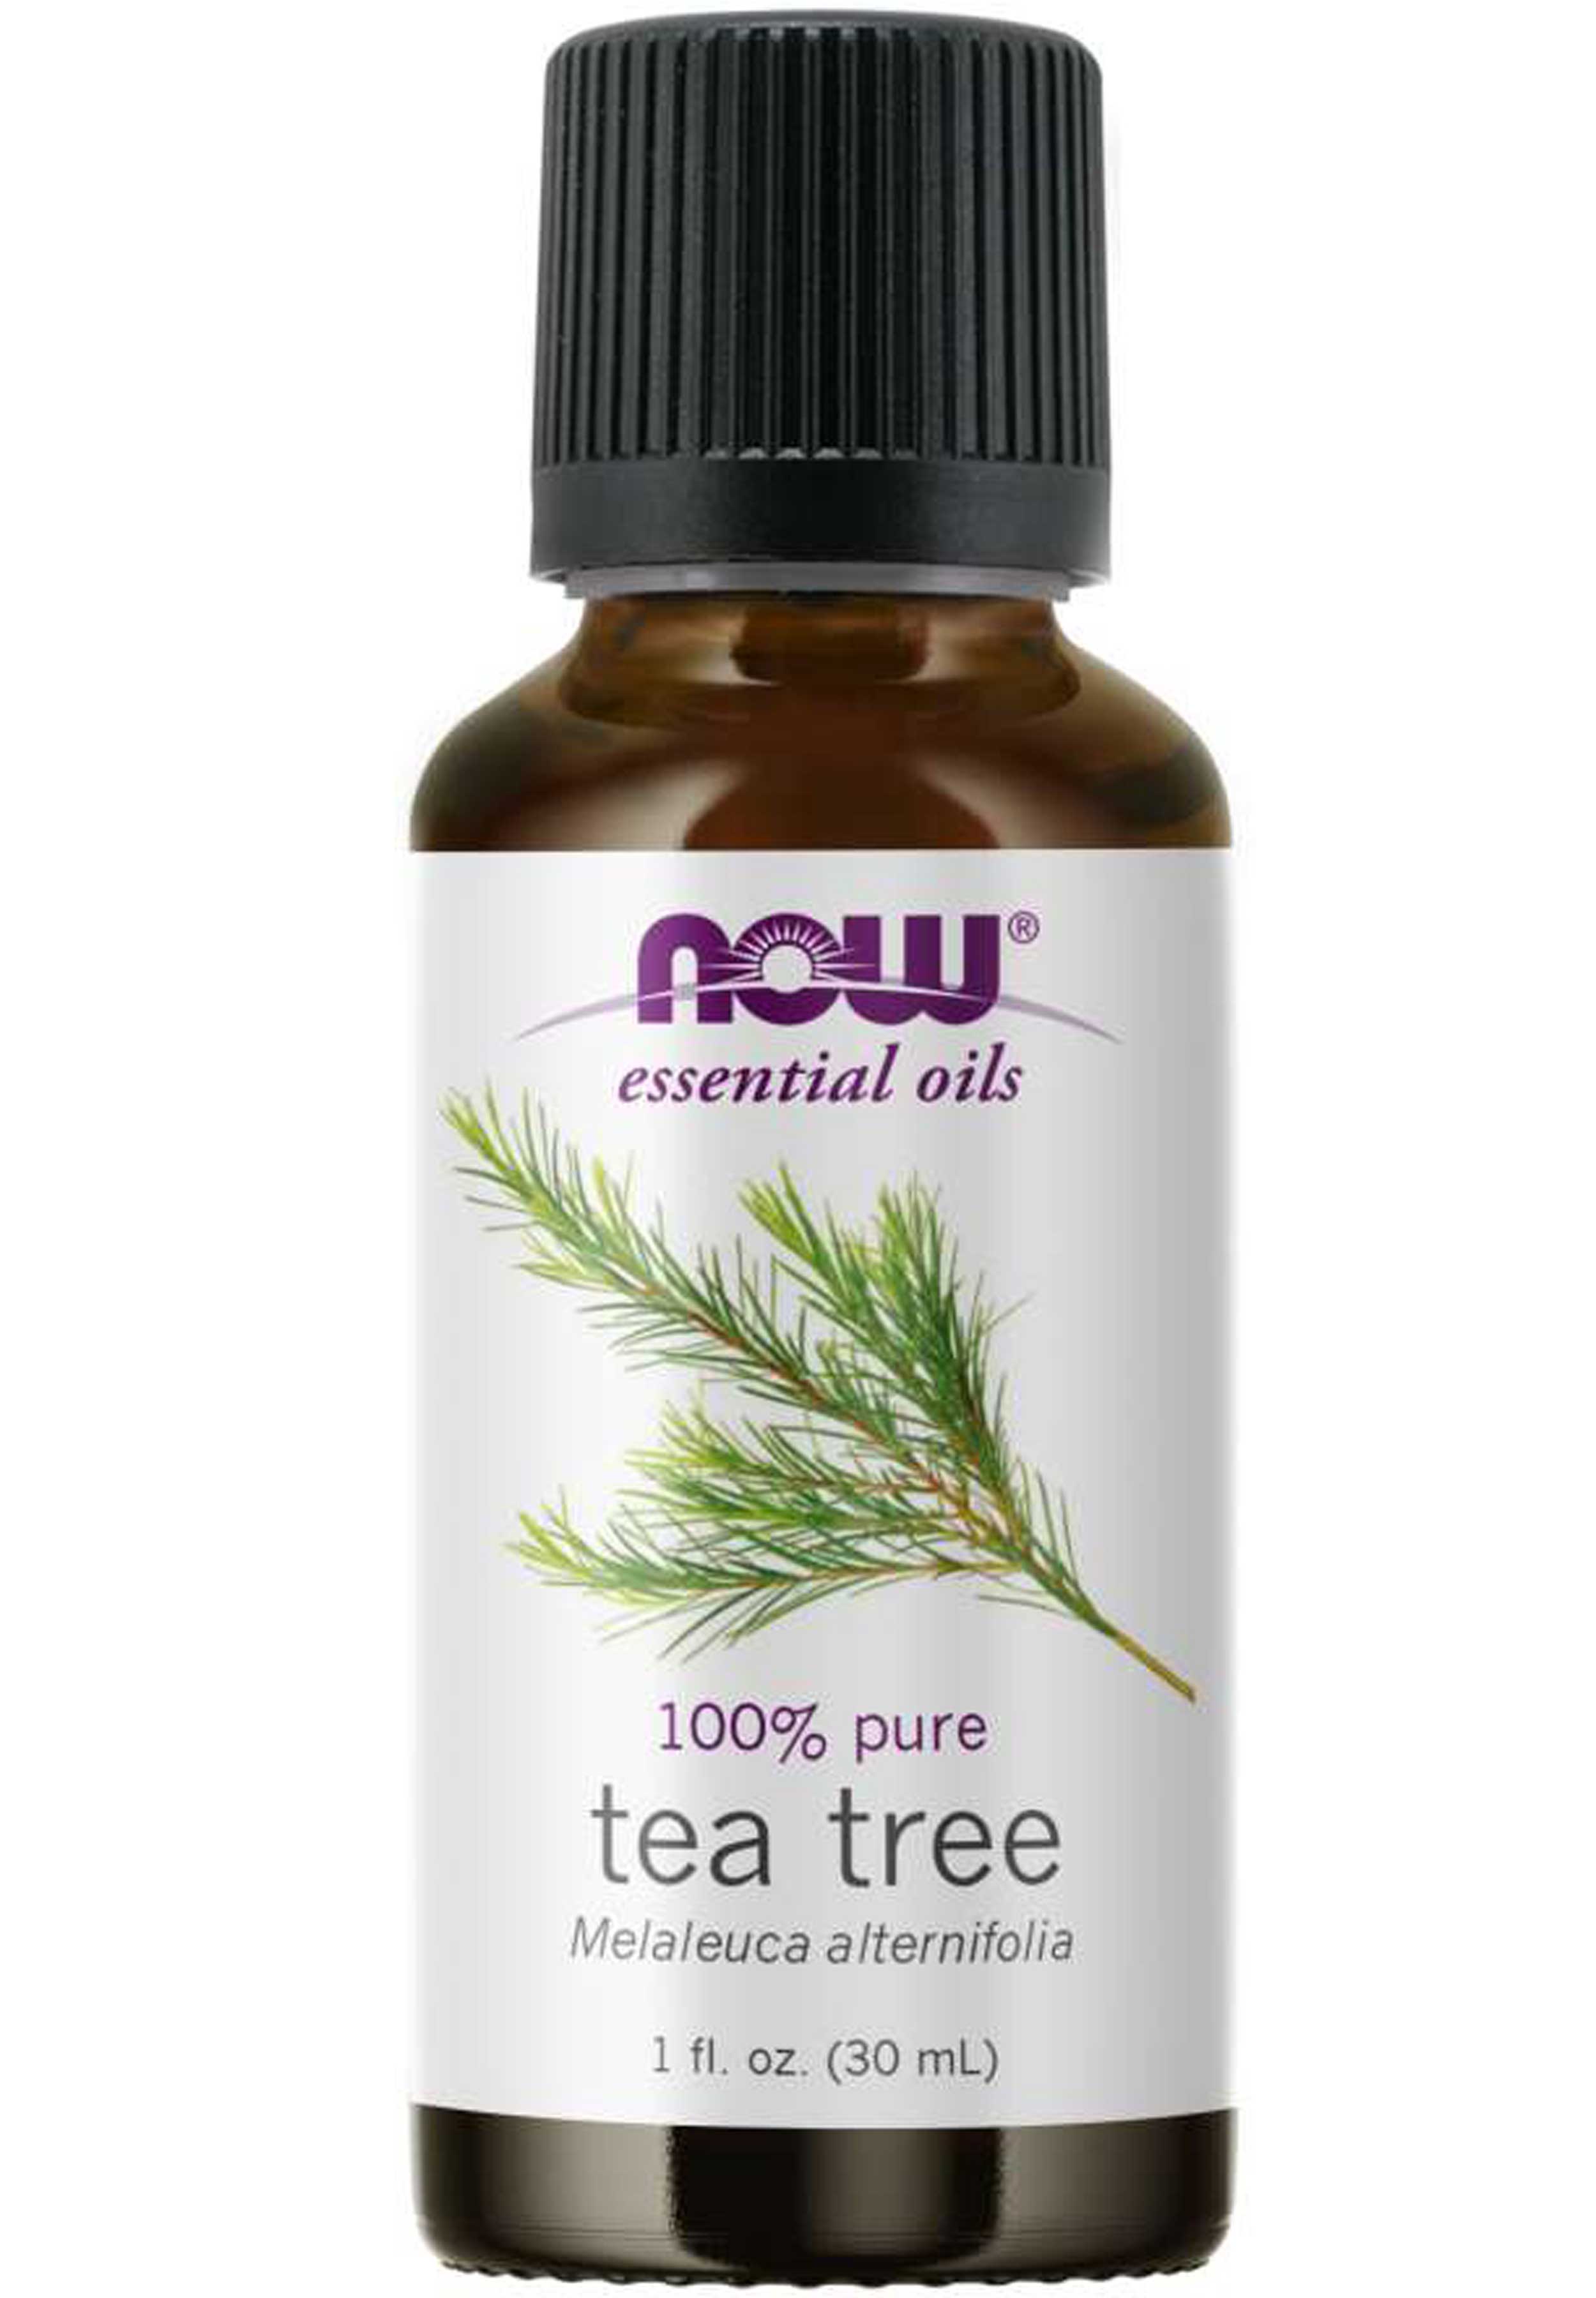 NOW Essential Oils Tea Tree Oil